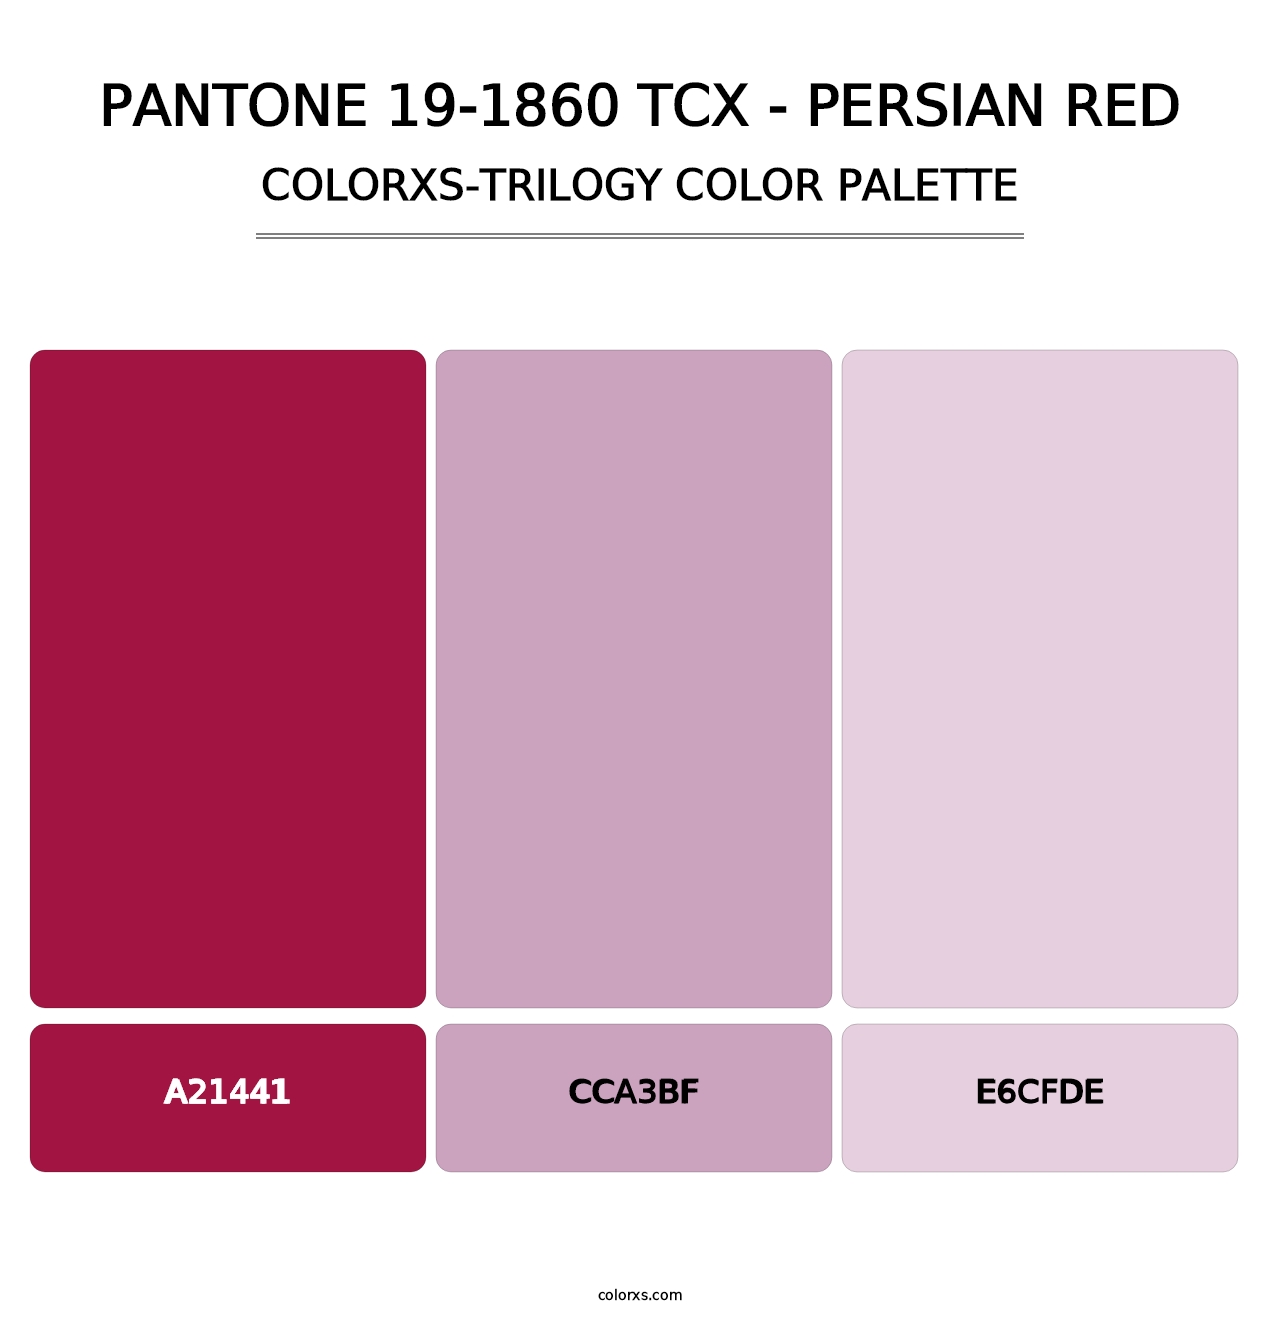 PANTONE 19-1860 TCX - Persian Red - Colorxs Trilogy Palette